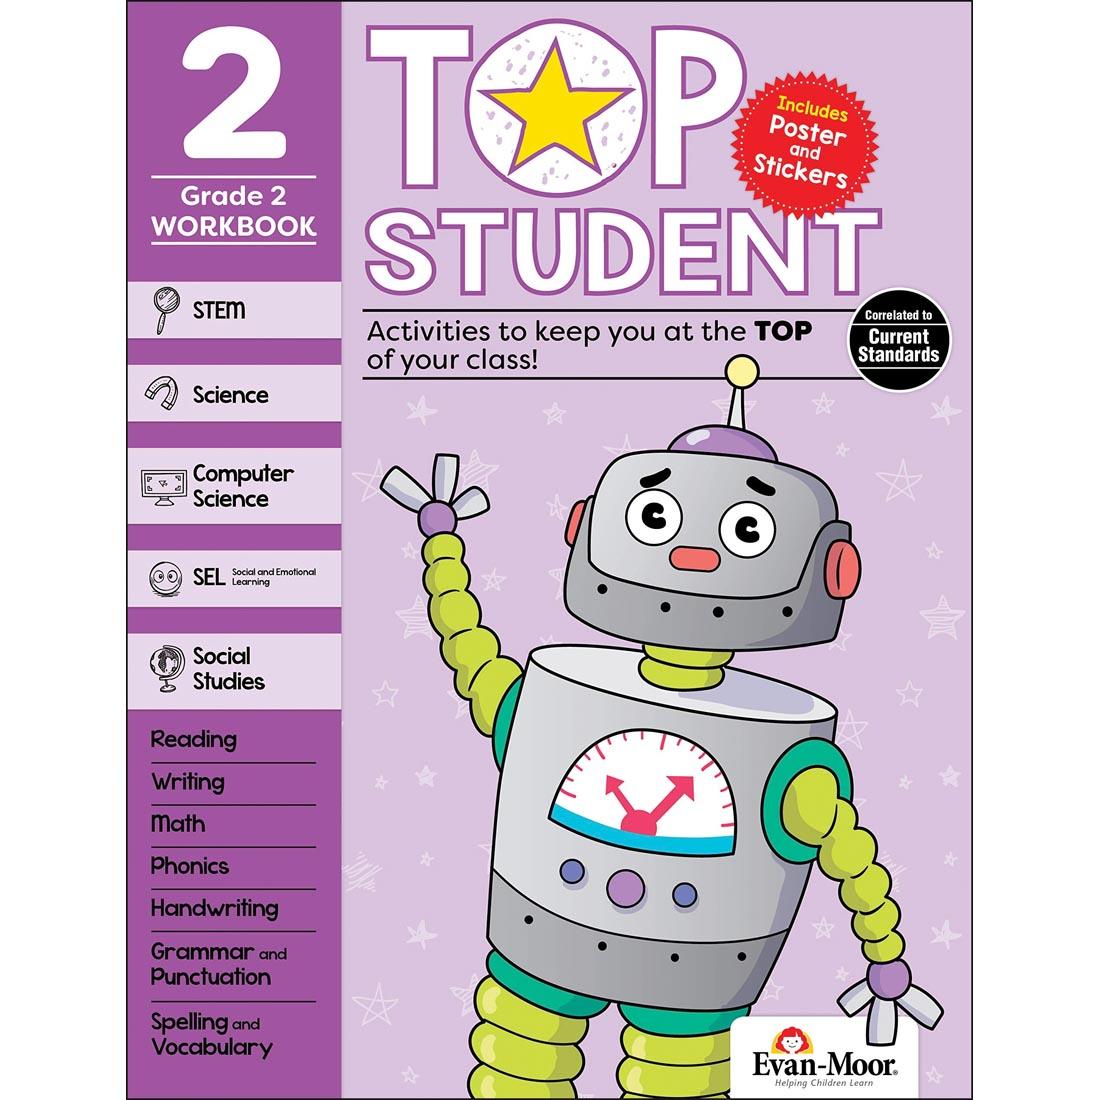 Top Student Grade 2 Workbook by Evan-Moor